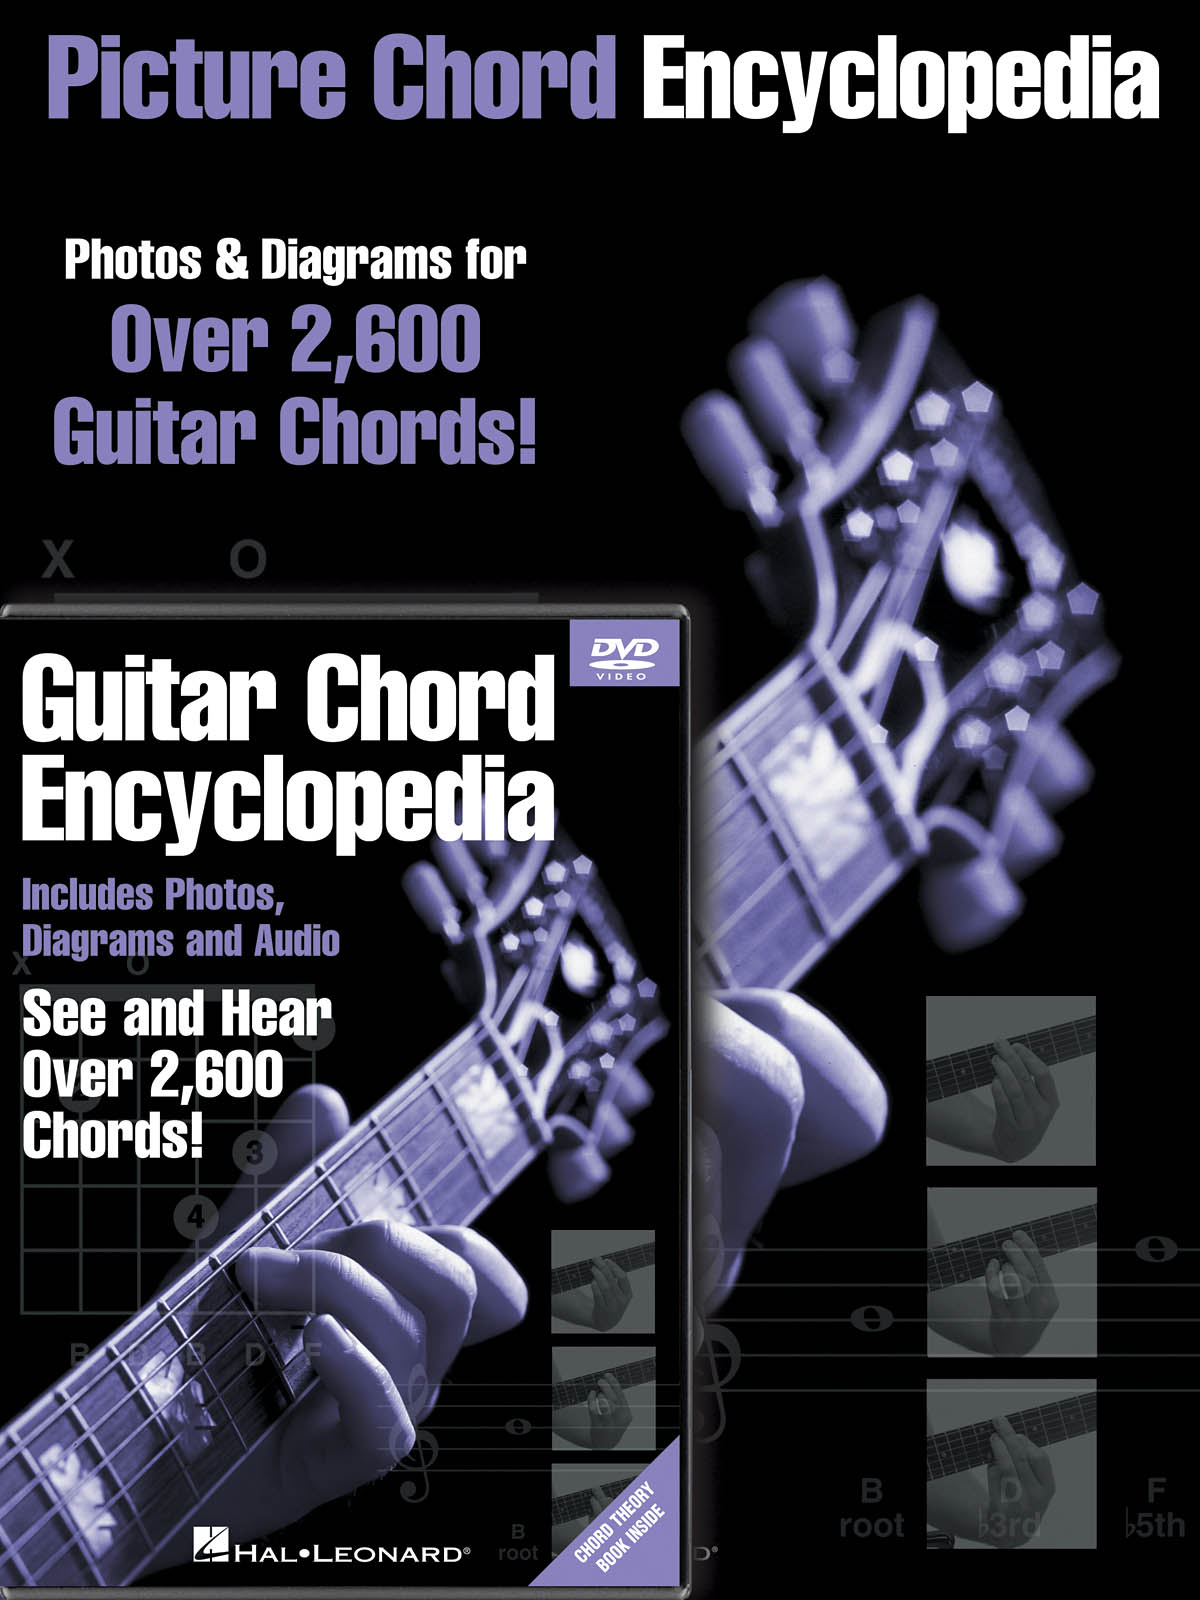 Guitar Chord Encyclopedia Pack - včetně knihy Encyklopedie obrázkových akordů pro kytaru a DVD